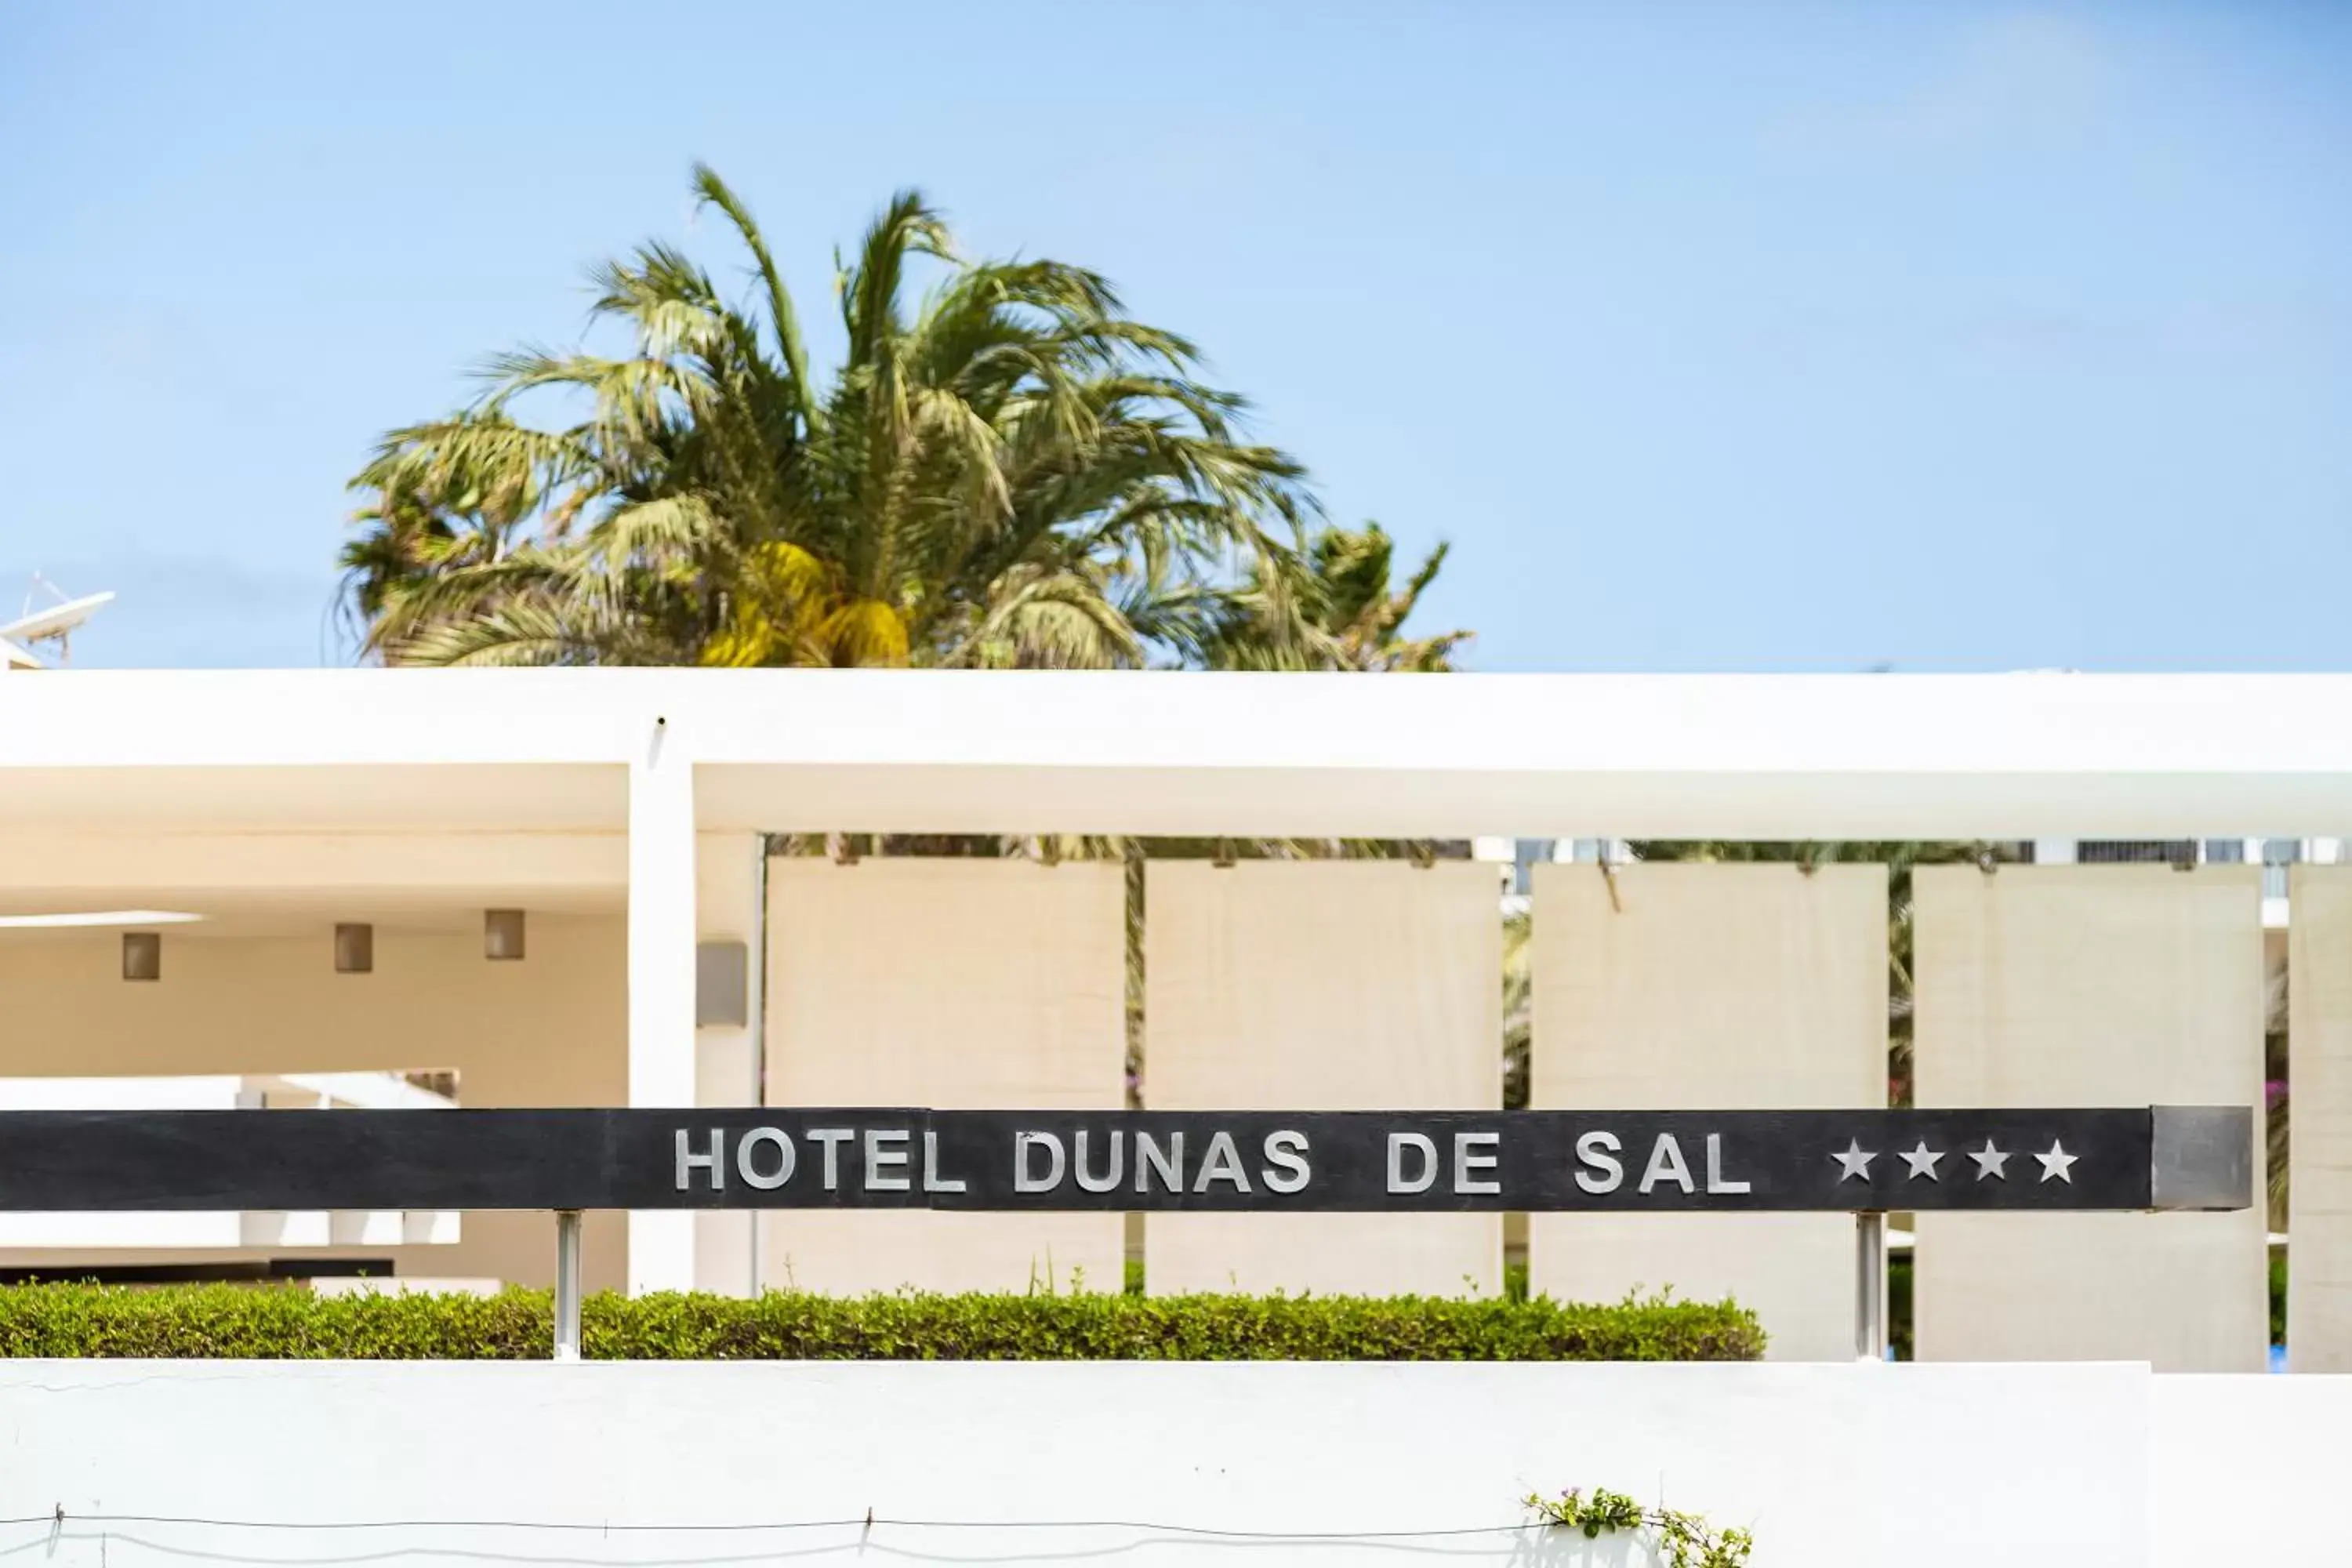 Facade/entrance in Hotel Dunas de Sal